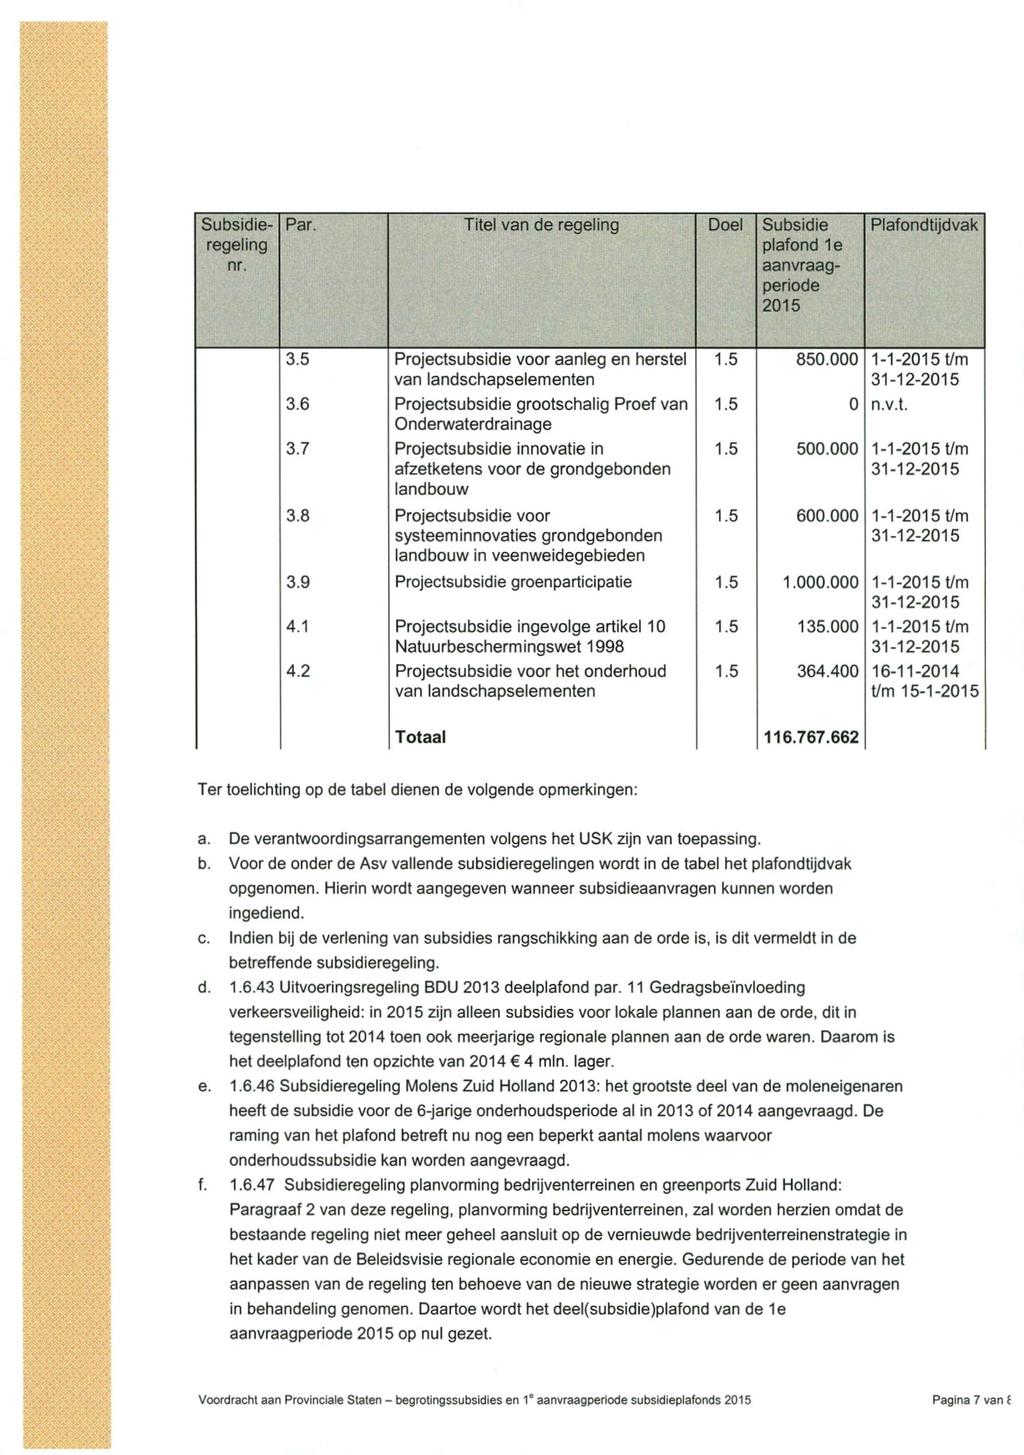 Subsidieregeling nr. Par. Titel van de regeling Doel Subsidie plafond 1e aanvraagperiode 2015 Plafondtijdvak 3.5 Projectsubsidie voor aanleg en herstel 1.5 850.